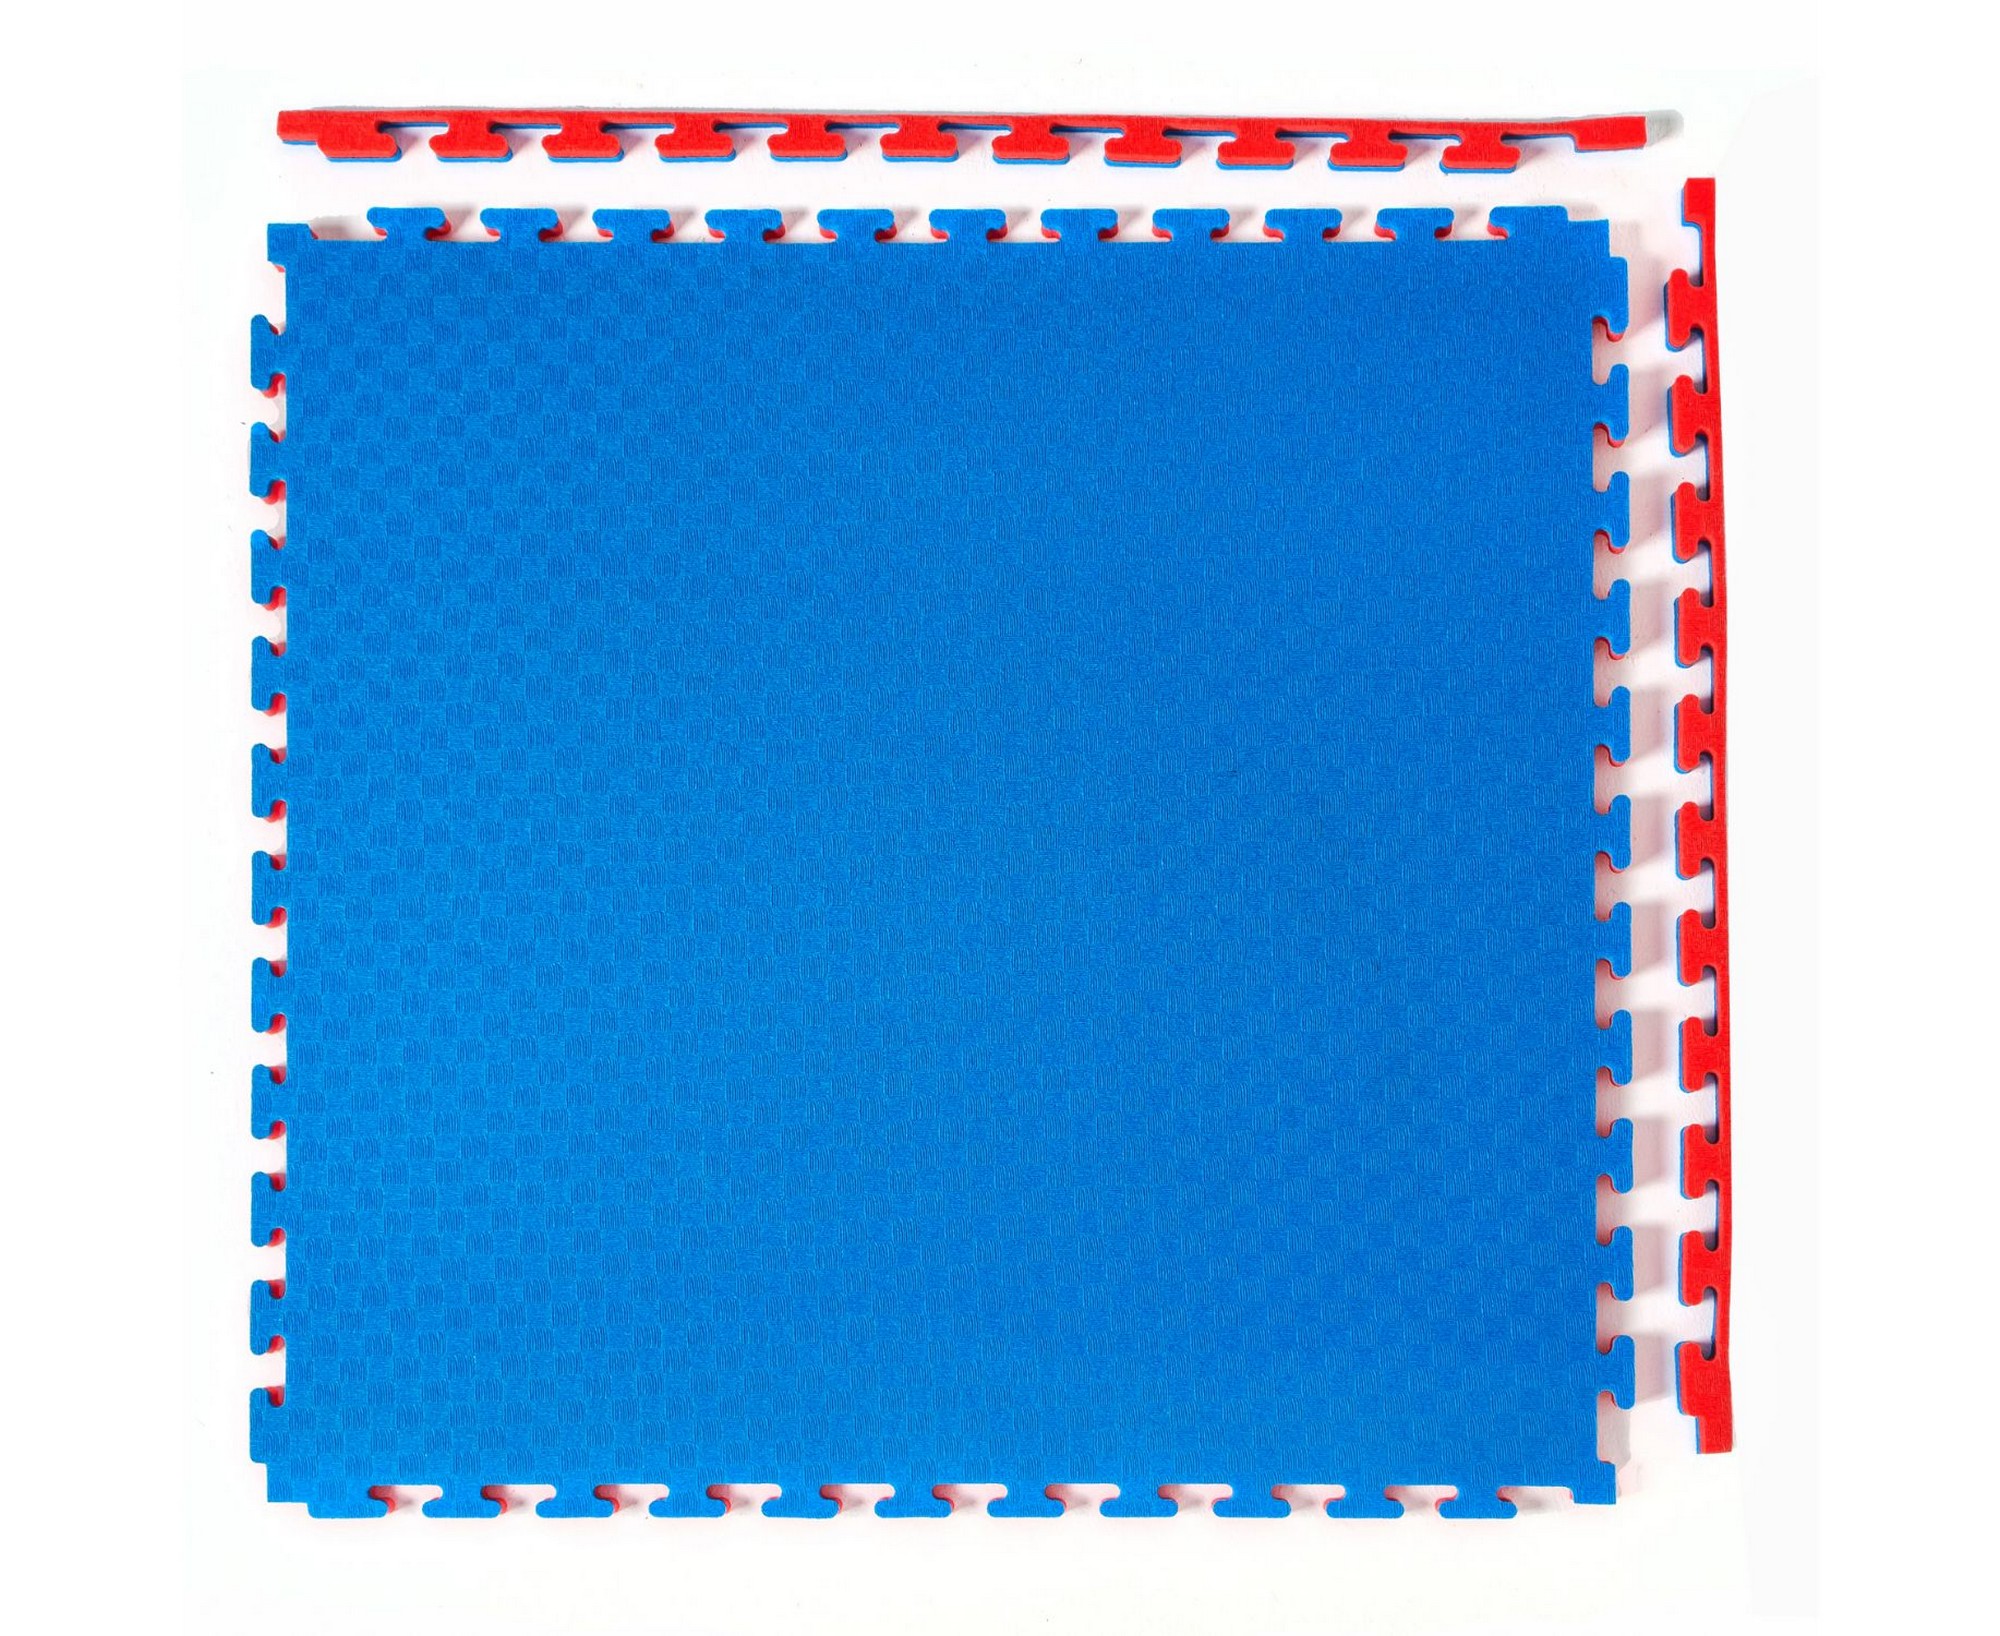 Будо-мат, 100x100 см, 20 мм DFC 12272 сине-красный